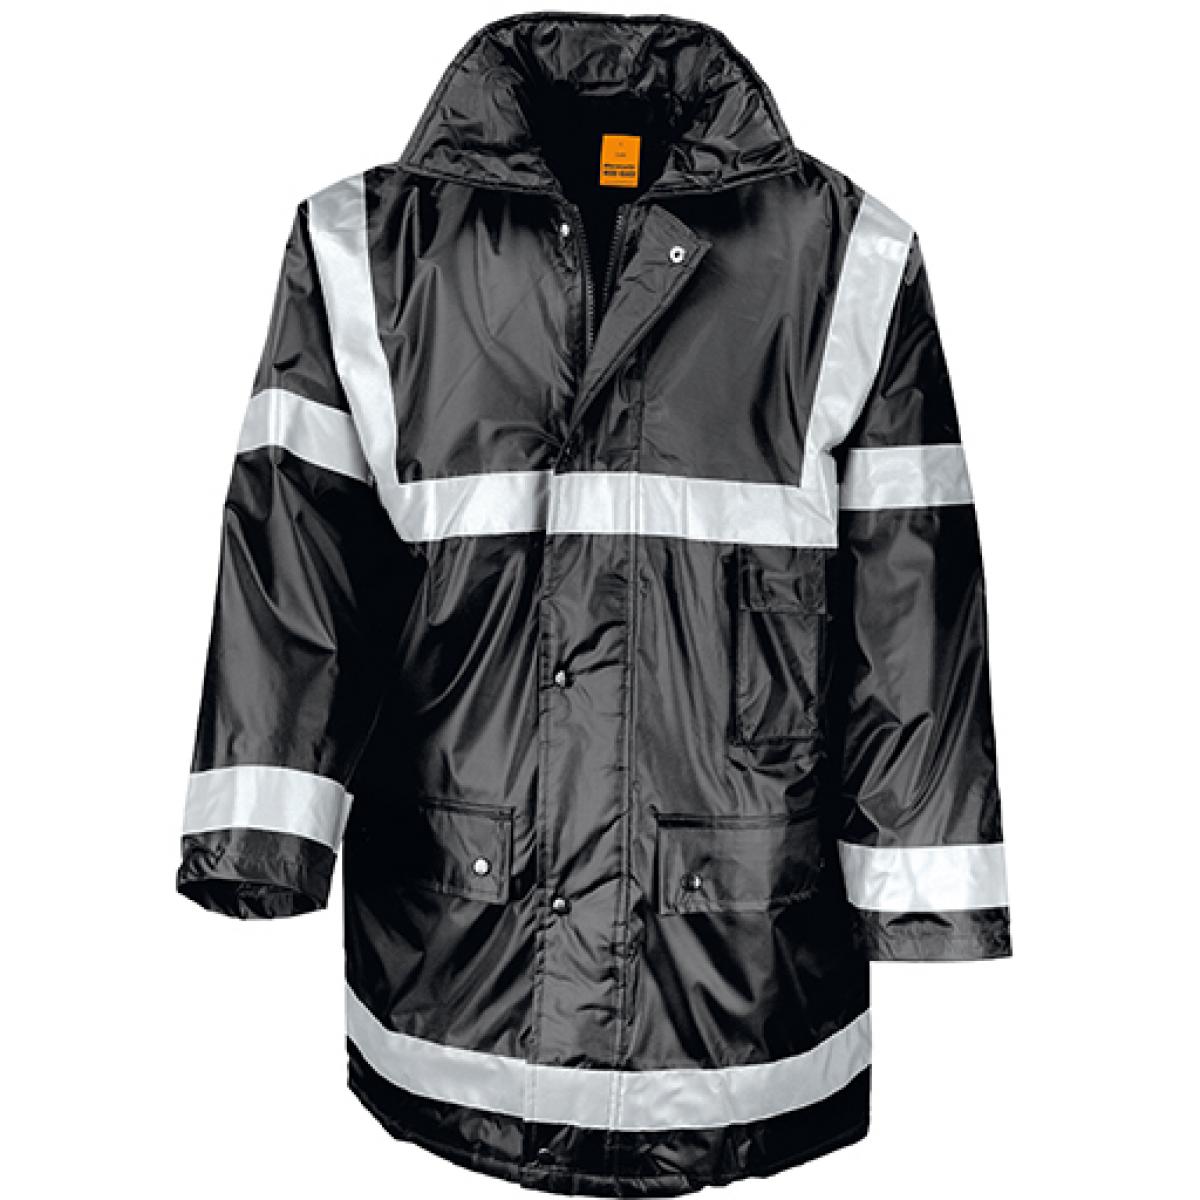 Hersteller: Result WORK-GUARD Herstellernummer: R023X Artikelbezeichnung: Herren Management Coat Arbeitsjacke Farbe: Black